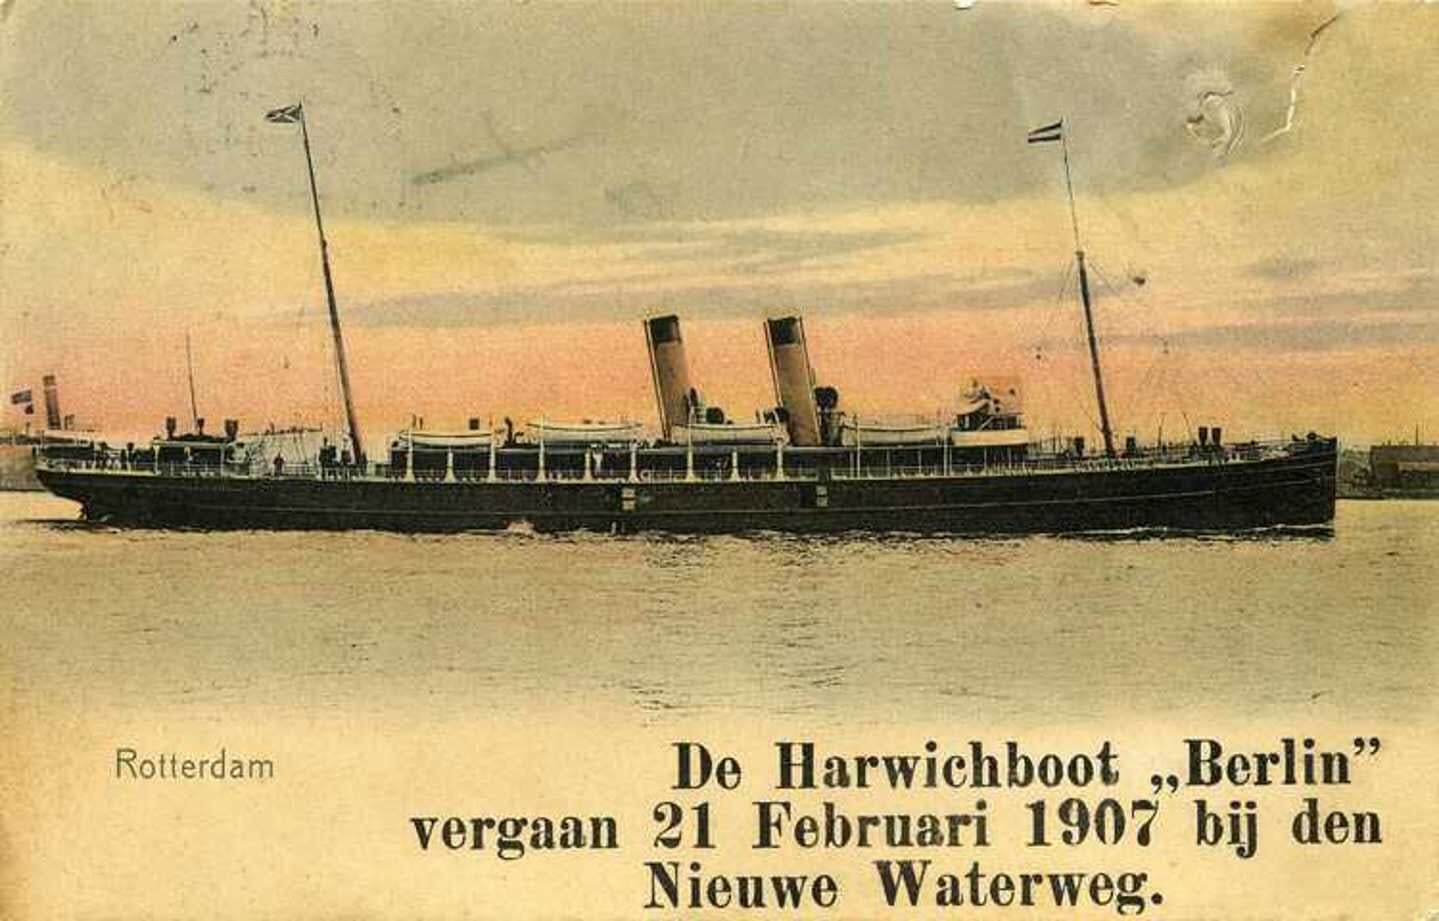 Ansichtkaart van de 'Berlin', het schip dat in 1907 verging bij Hoek van Holland.